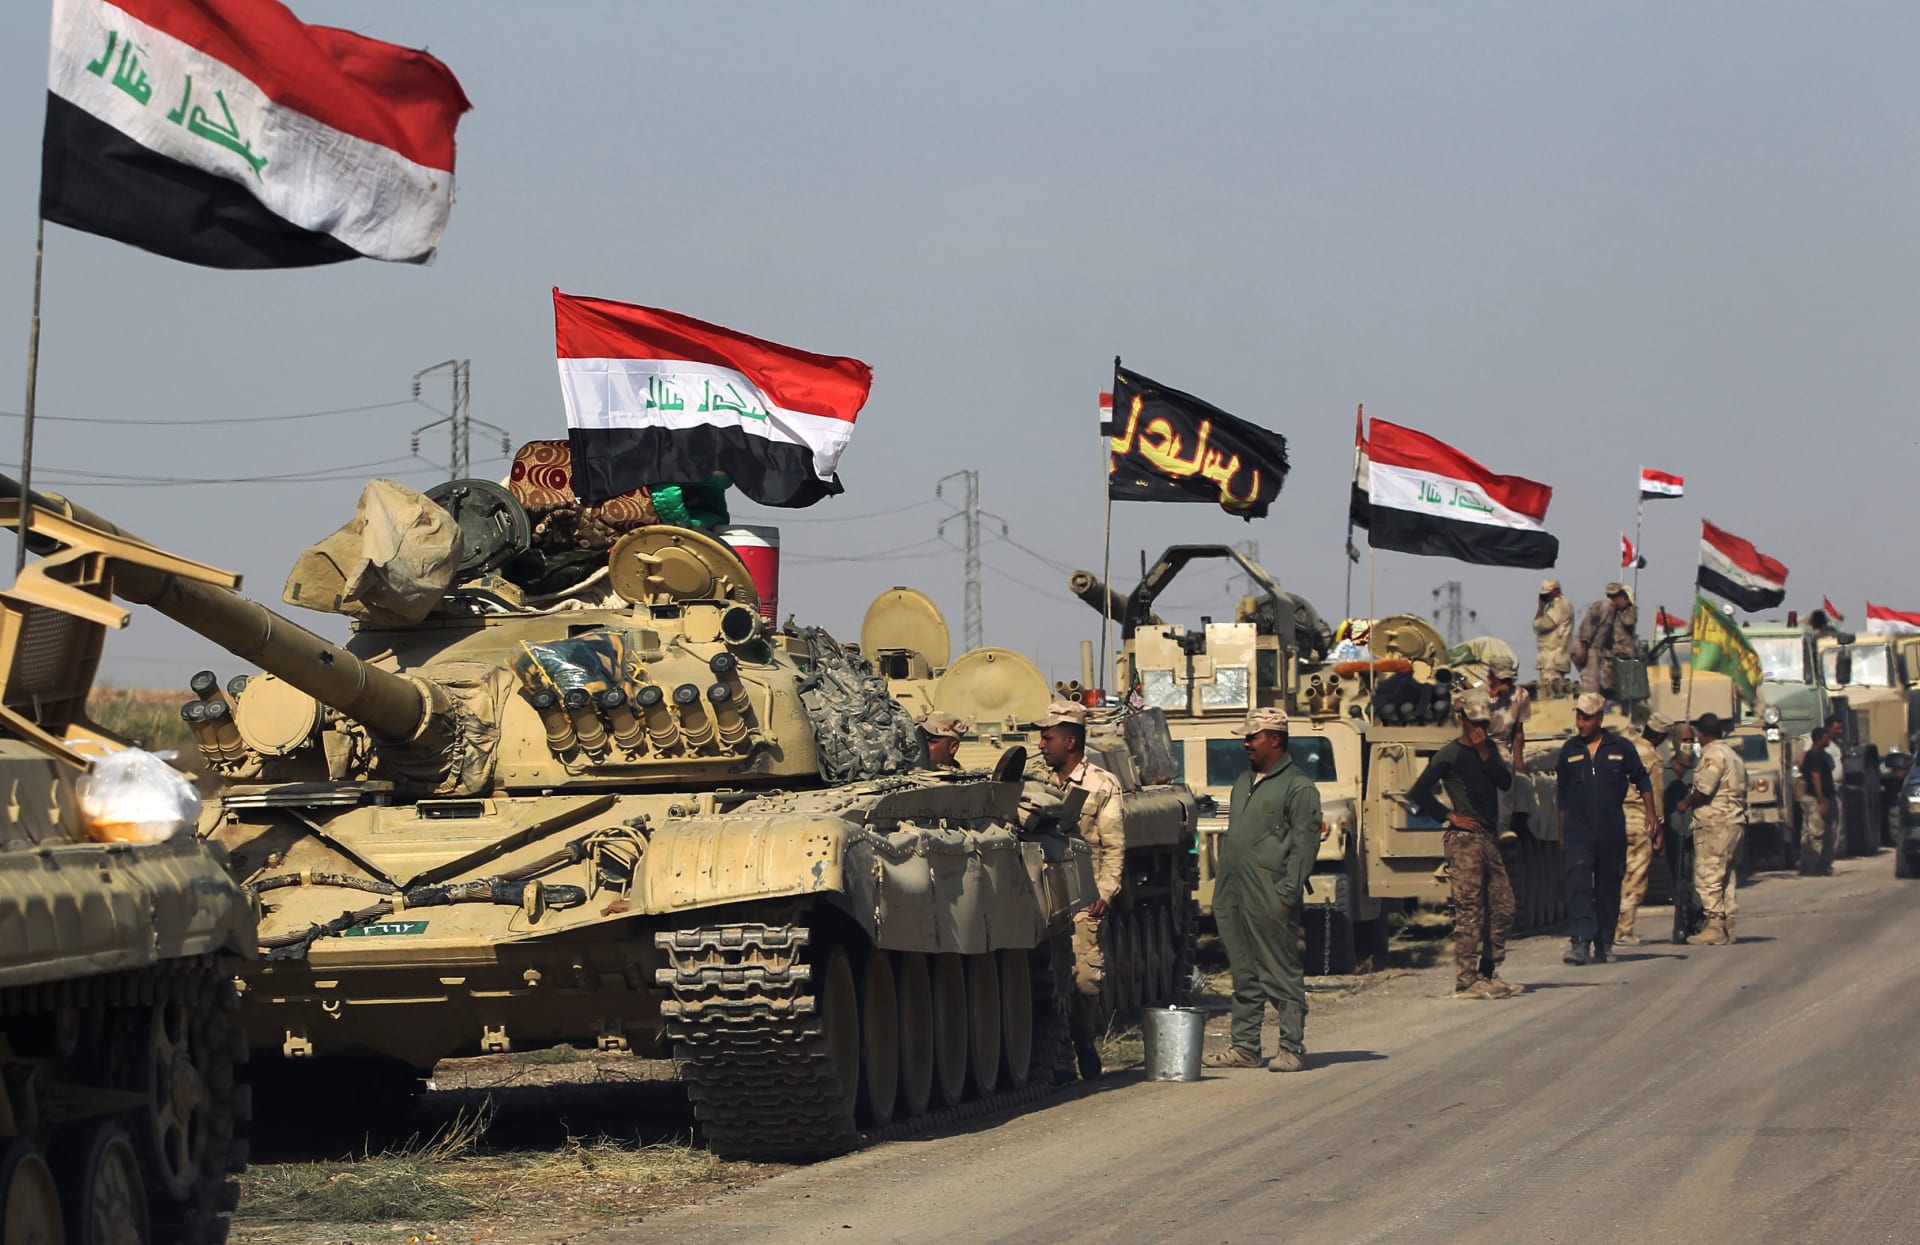 قوات عراقية تدخل مناطق بكركوك والأكراد يتهمونها باستخدام سلاح أمريكي